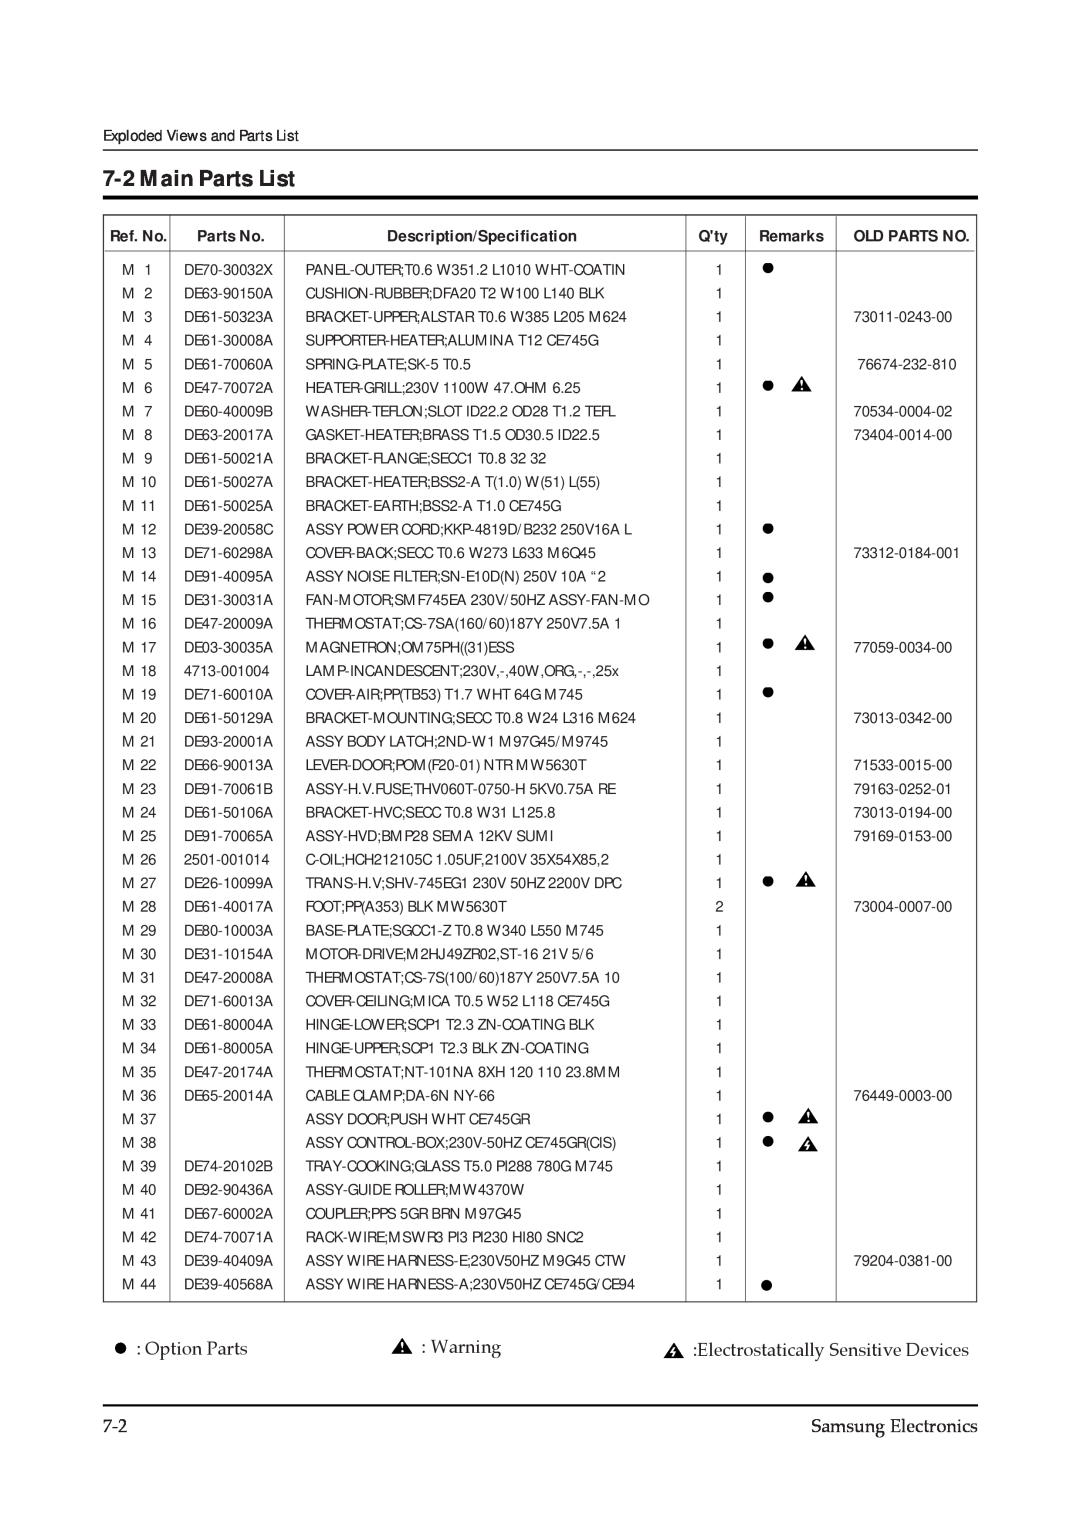 Samsung CE745GR service manual Main Parts List, Parts No, Description/Specification, Remarks 